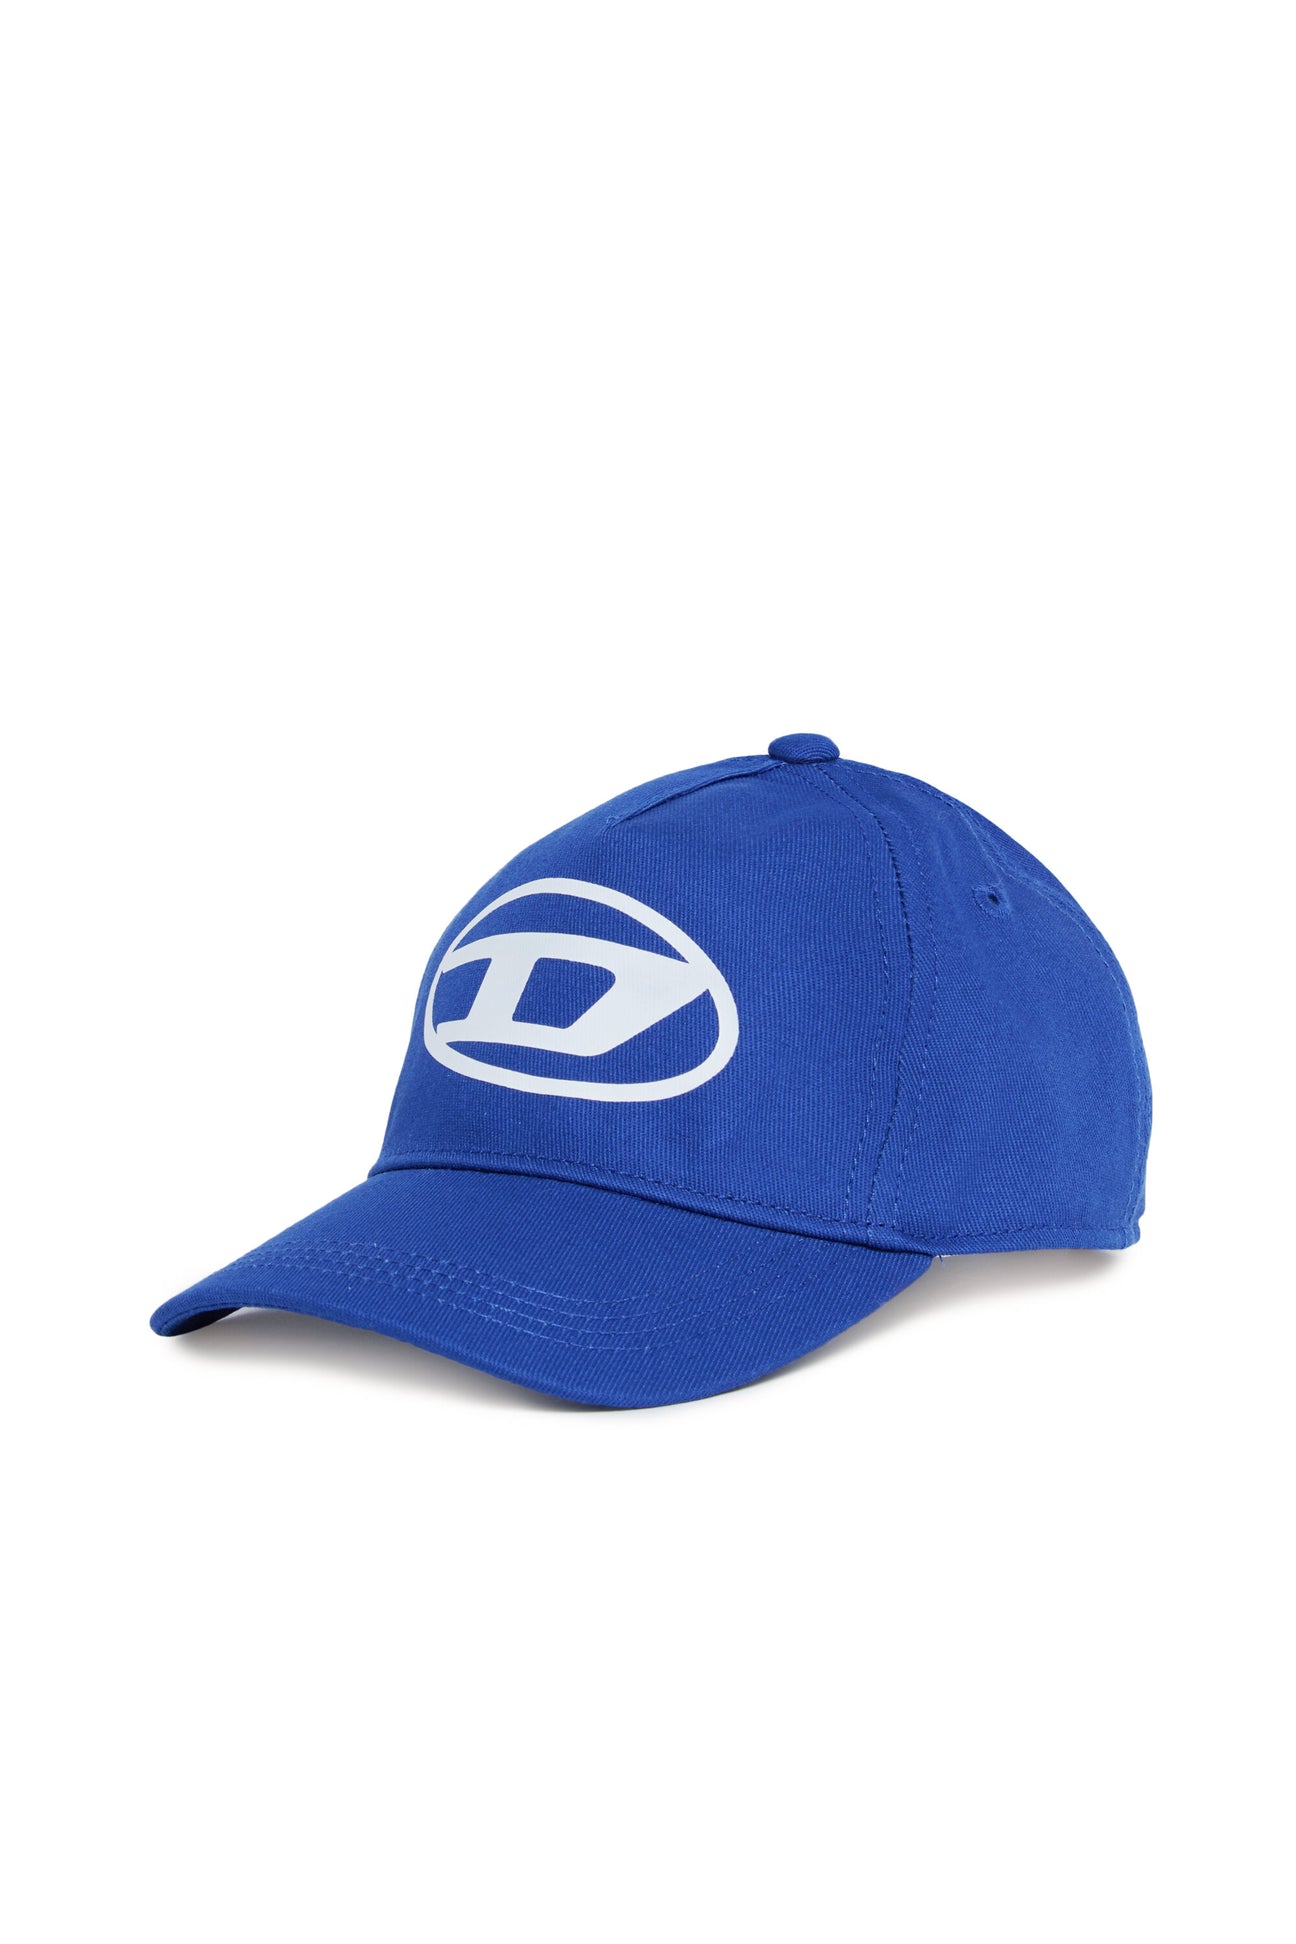 Oval D branded garbardine baseball cap 